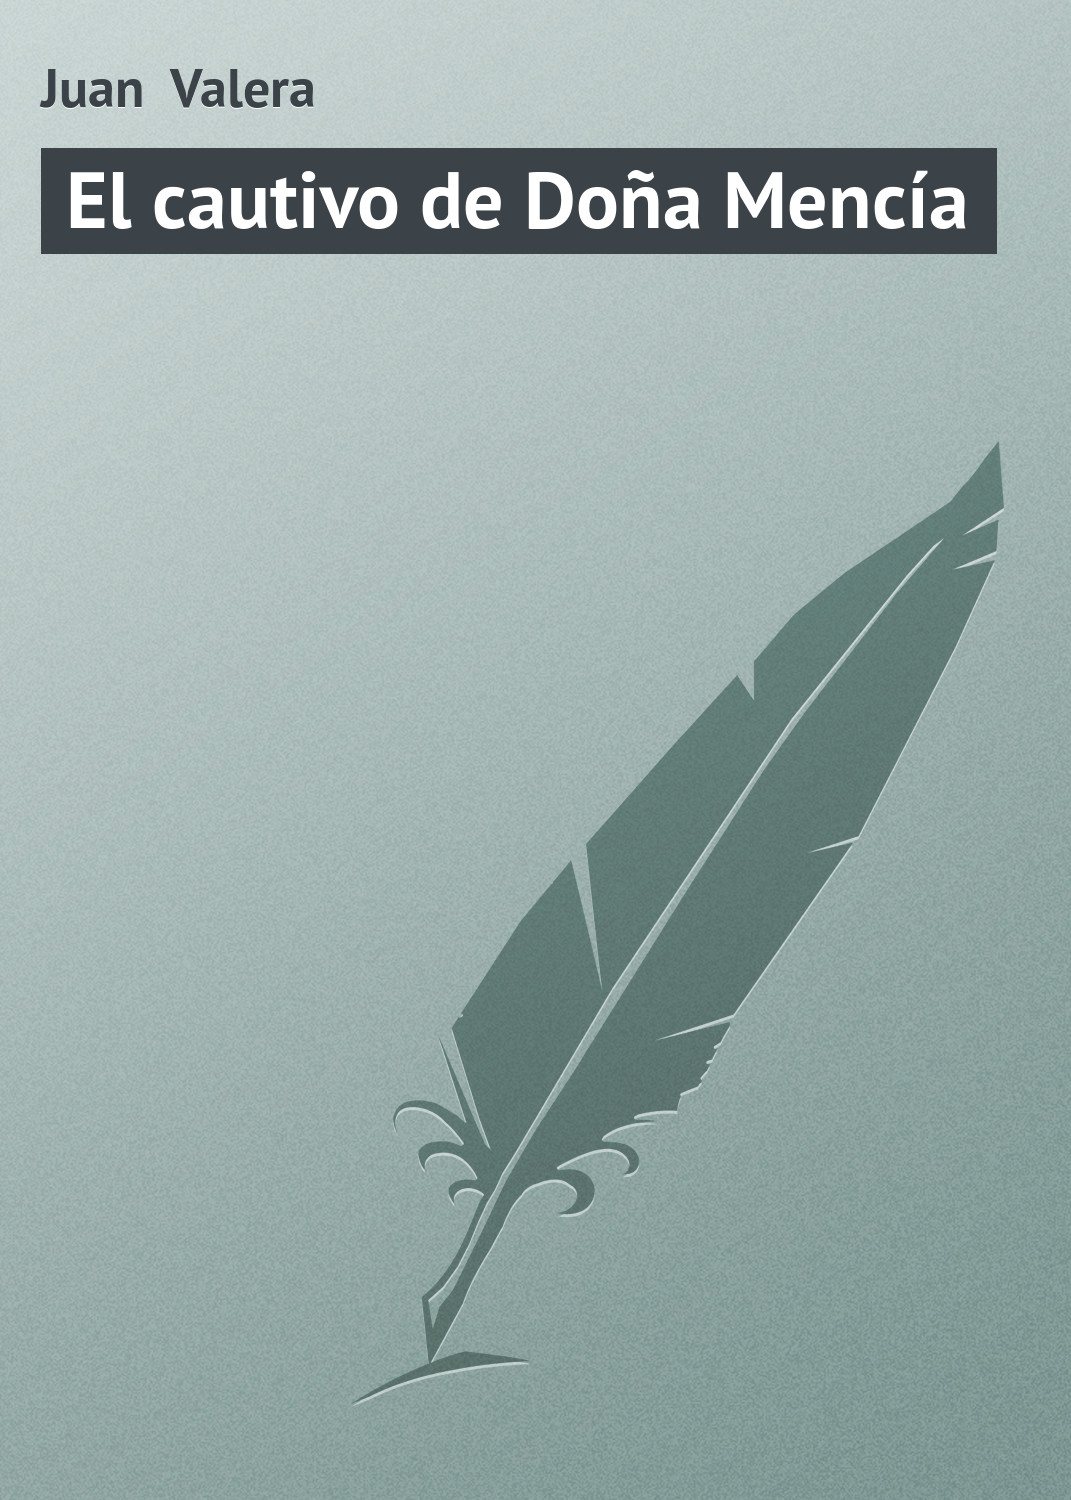 Книга El cautivo de Doña Mencía из серии , созданная Juan Valera, может относится к жанру Зарубежная старинная литература, Зарубежная классика. Стоимость электронной книги El cautivo de Doña Mencía с идентификатором 21107526 составляет 5.99 руб.